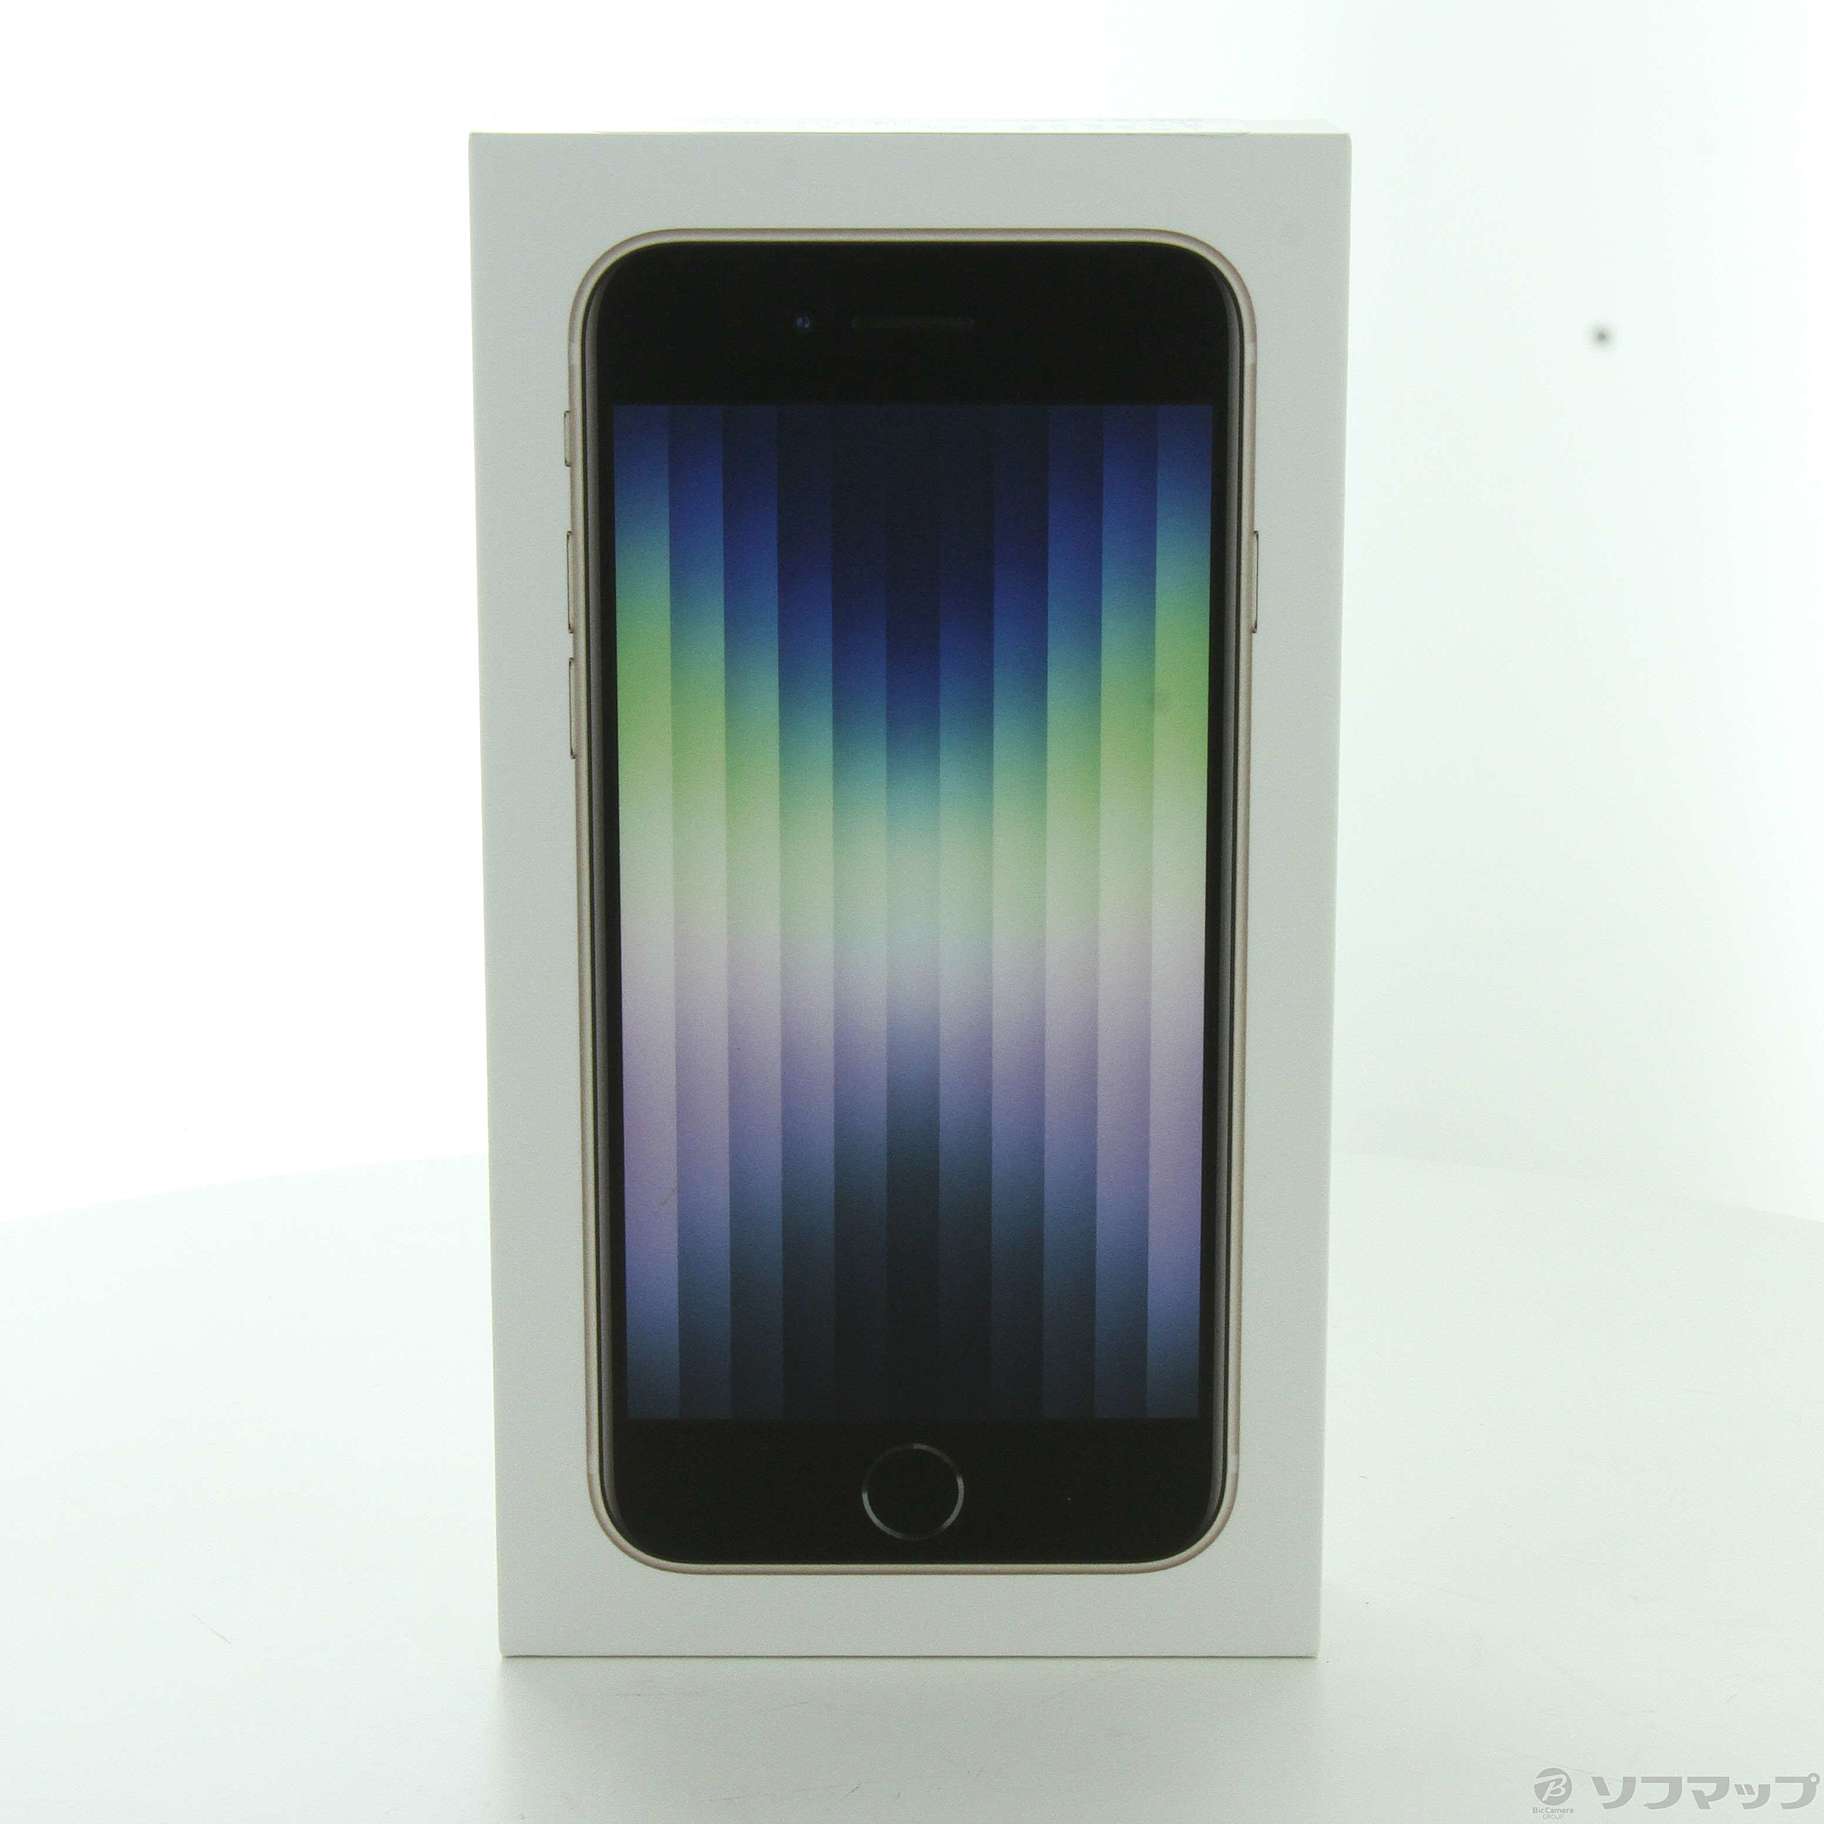 包装無料/送料無料 iPhone スターライト SE SIMフリー iPhone (第3世代 